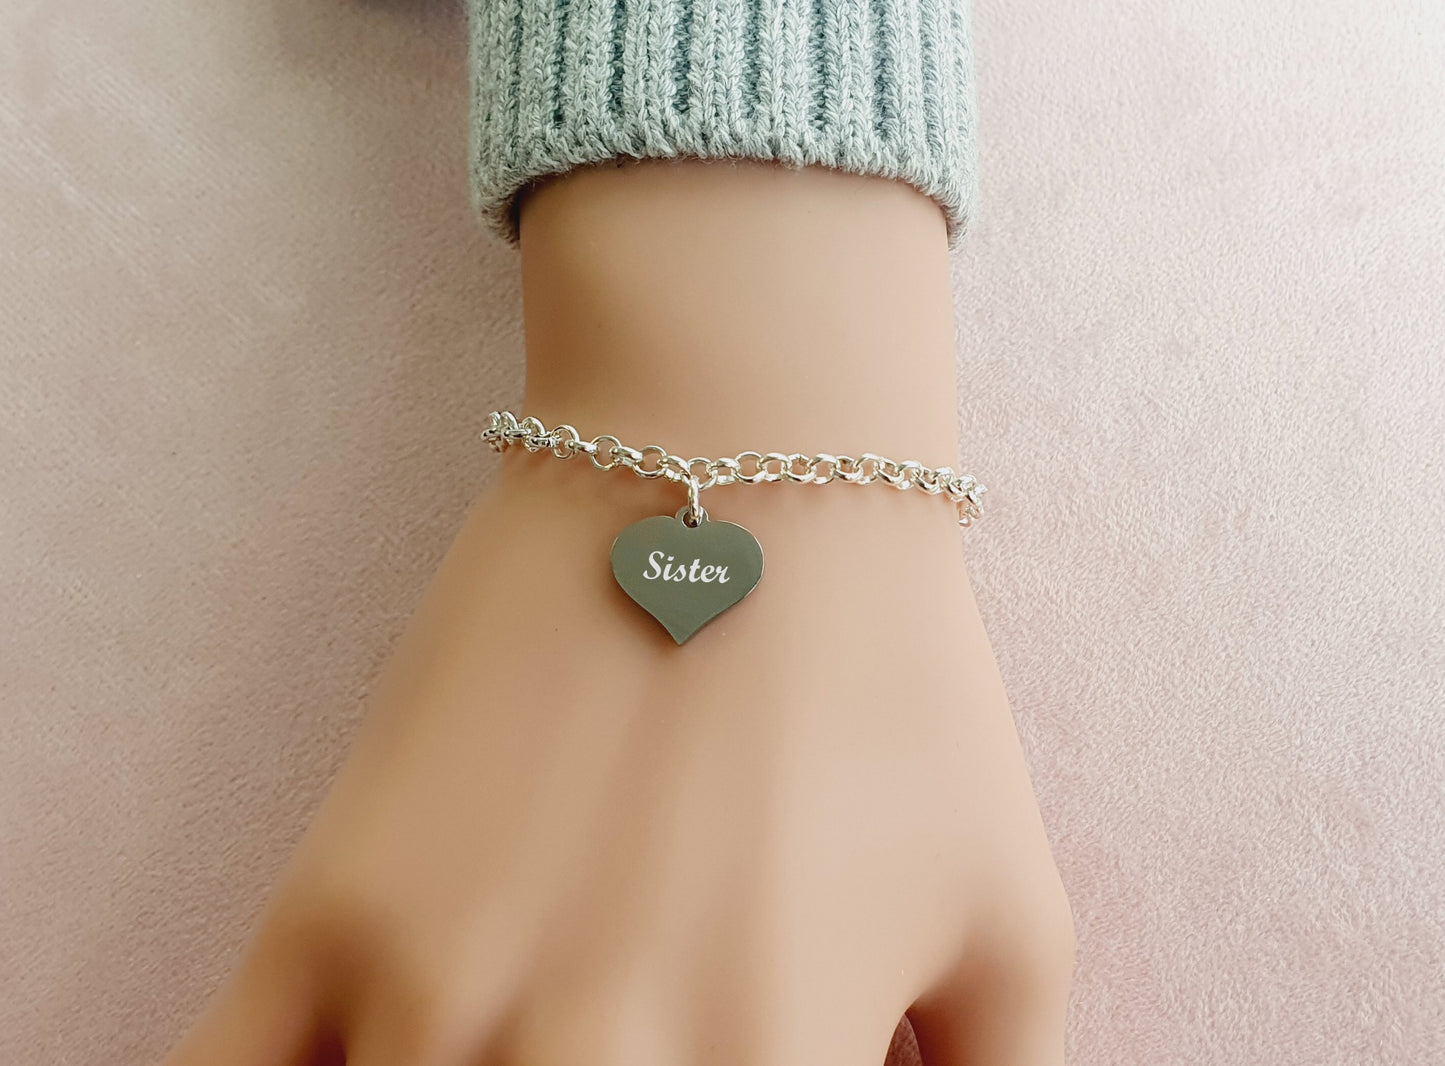 Sister Engraved Heart Charm Link Bracelet, Gift for Girl's and Women